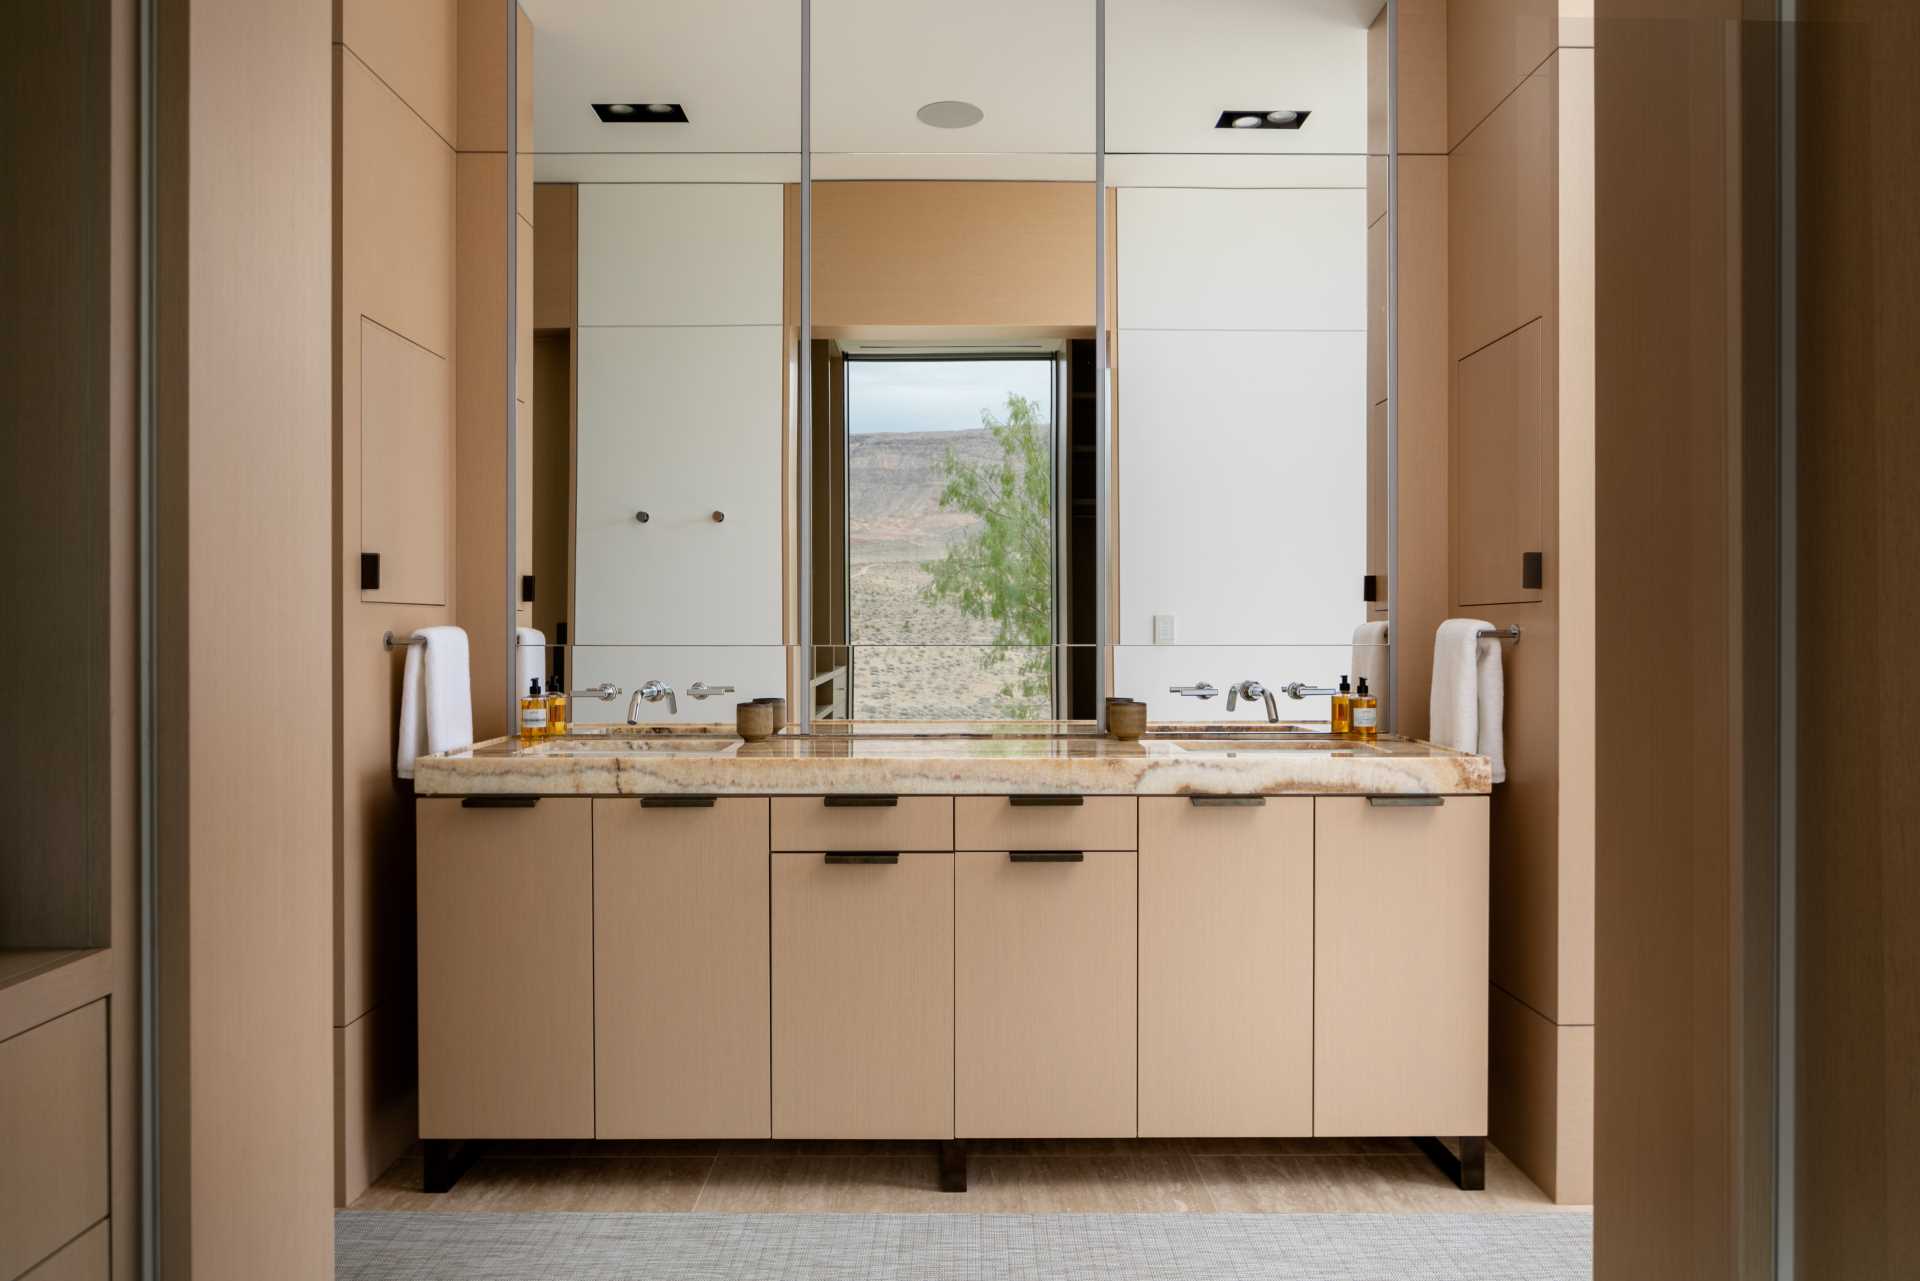 یک حمام مدرن با یک آینه بزرگ که دیوار بالای روشویی را می پوشاند.